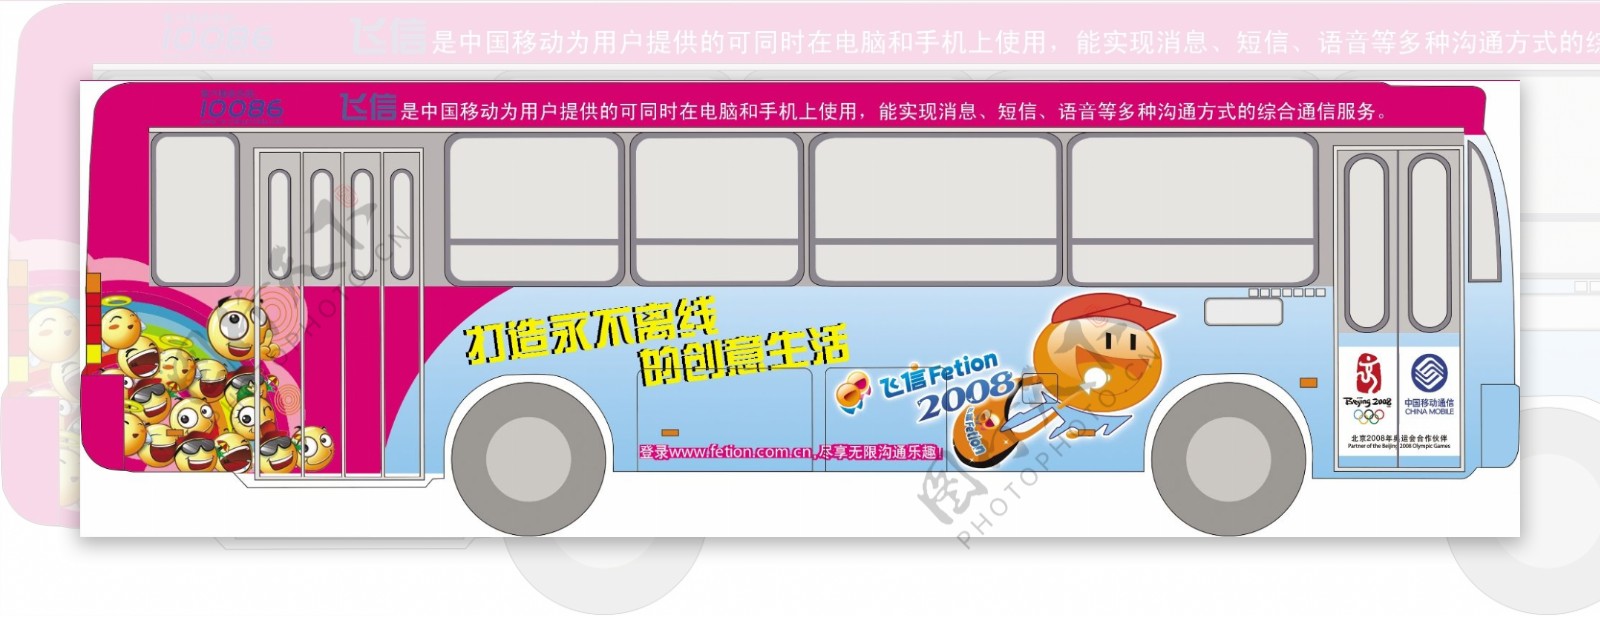 中国移动飞信车身广告图片